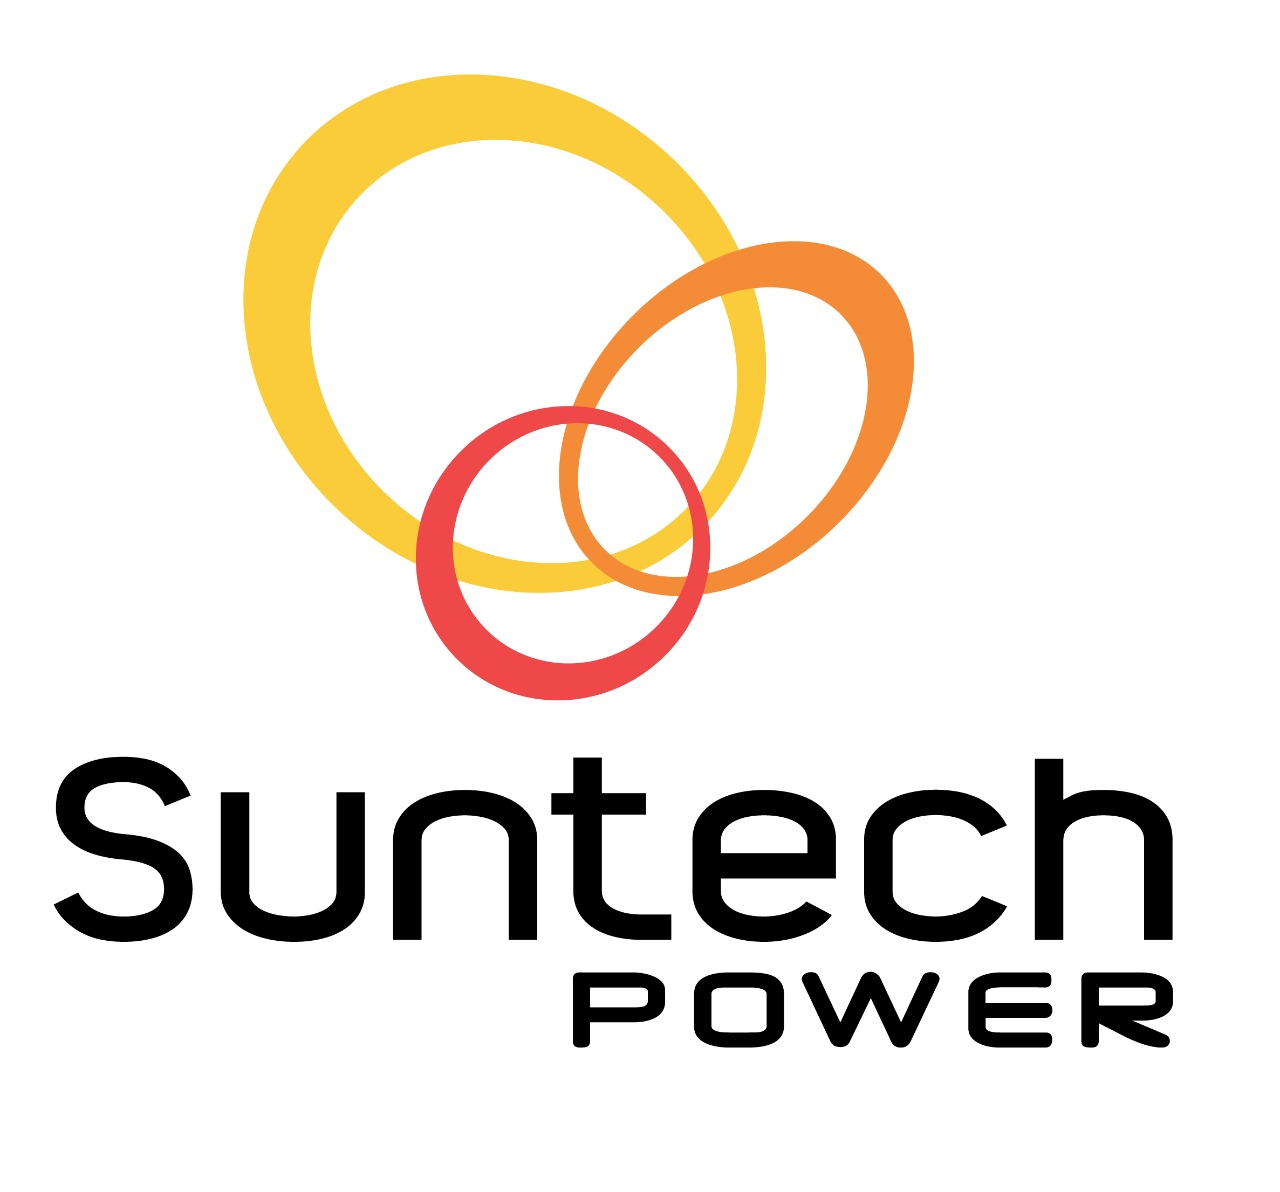 Suntech Power Limited